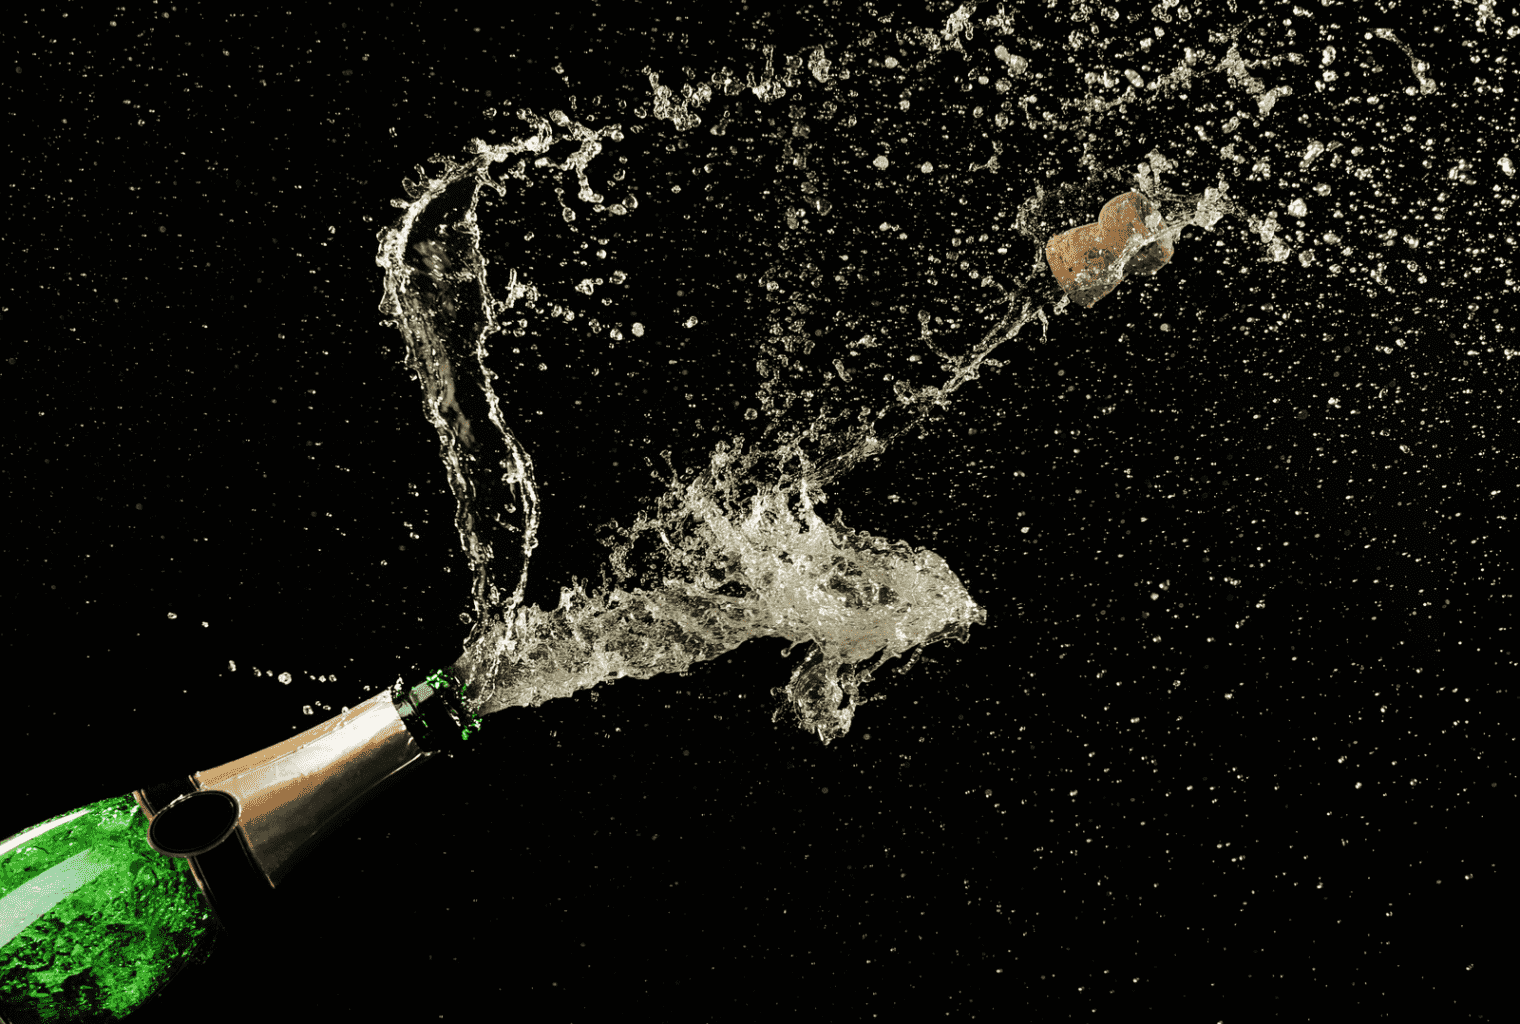 Зачем при спуске корабля на воду о борт разбивают бутылку шампанского?